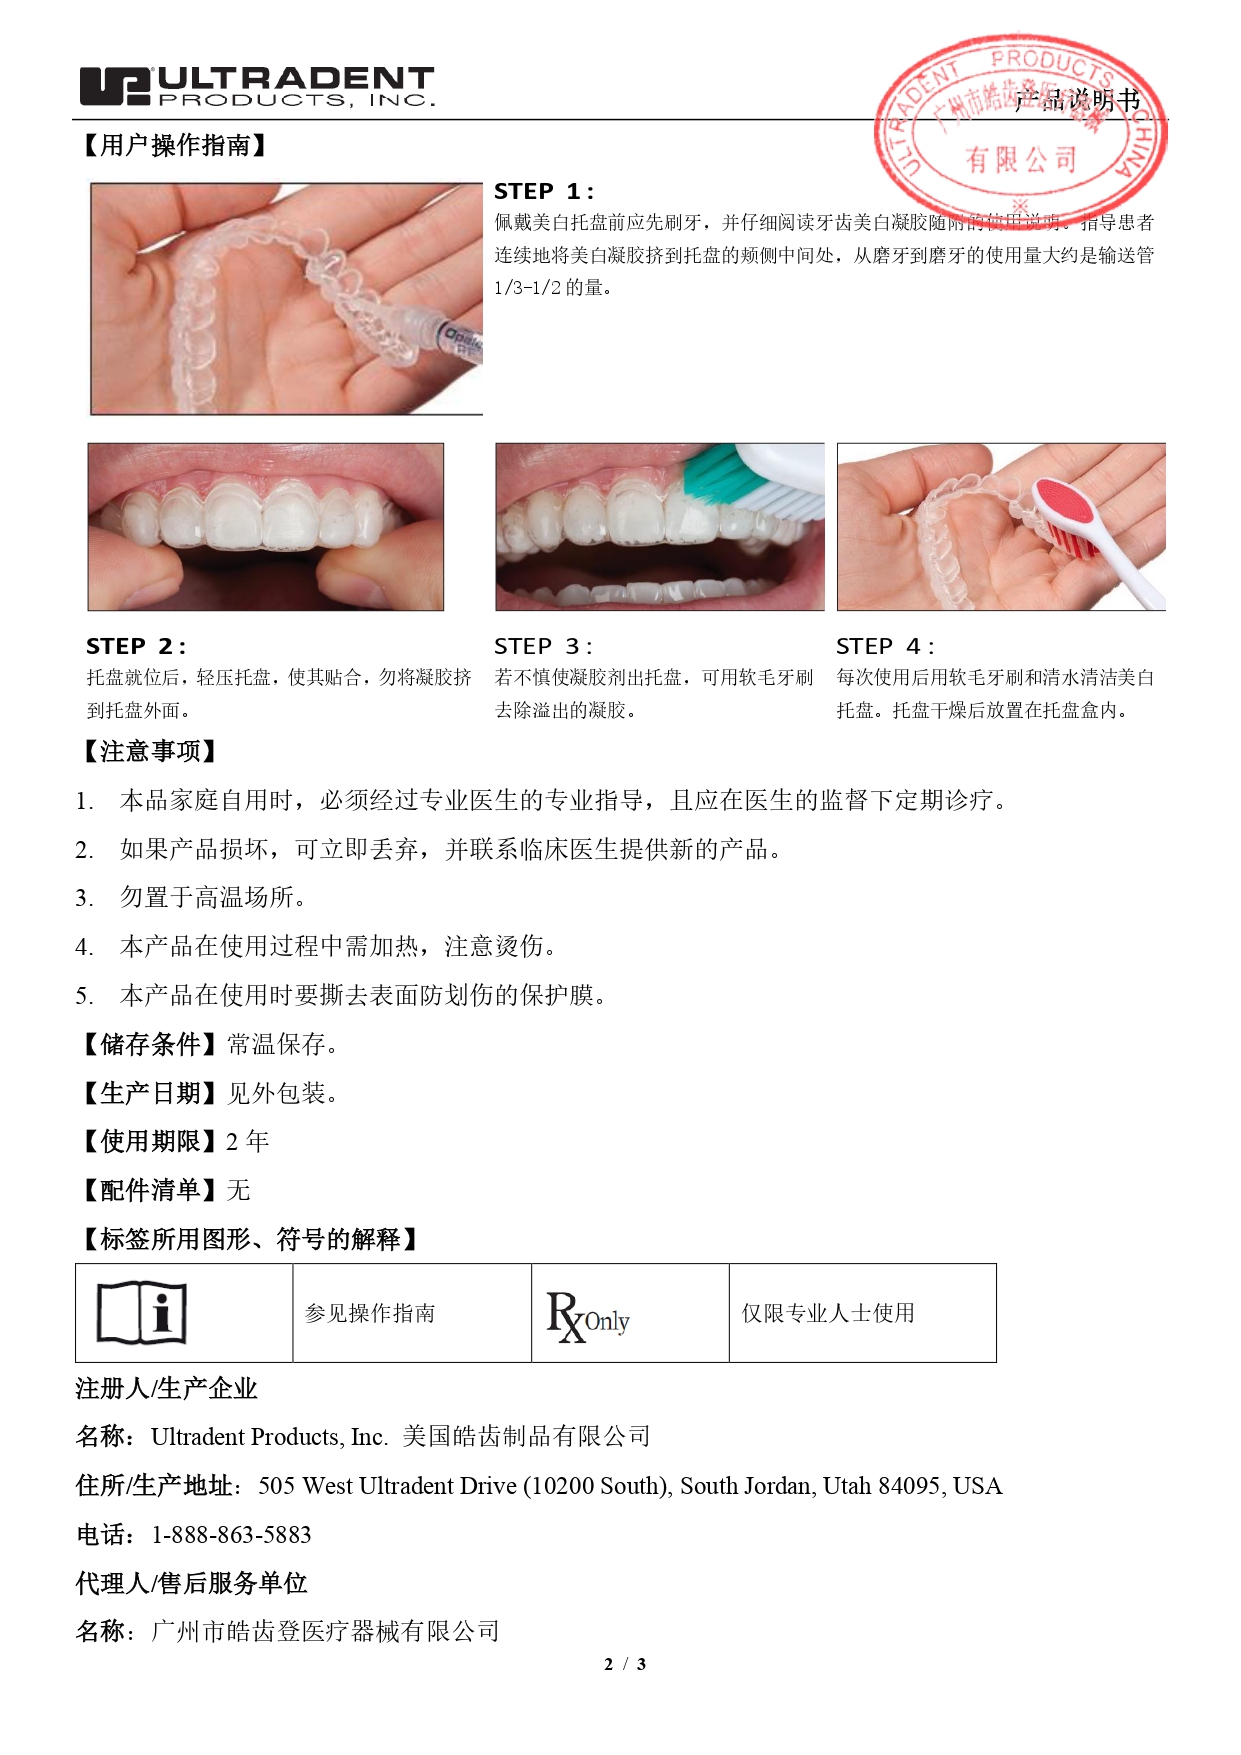 牙科膜片-中文说明书-Jul2023 盖章_page-0002.jpg